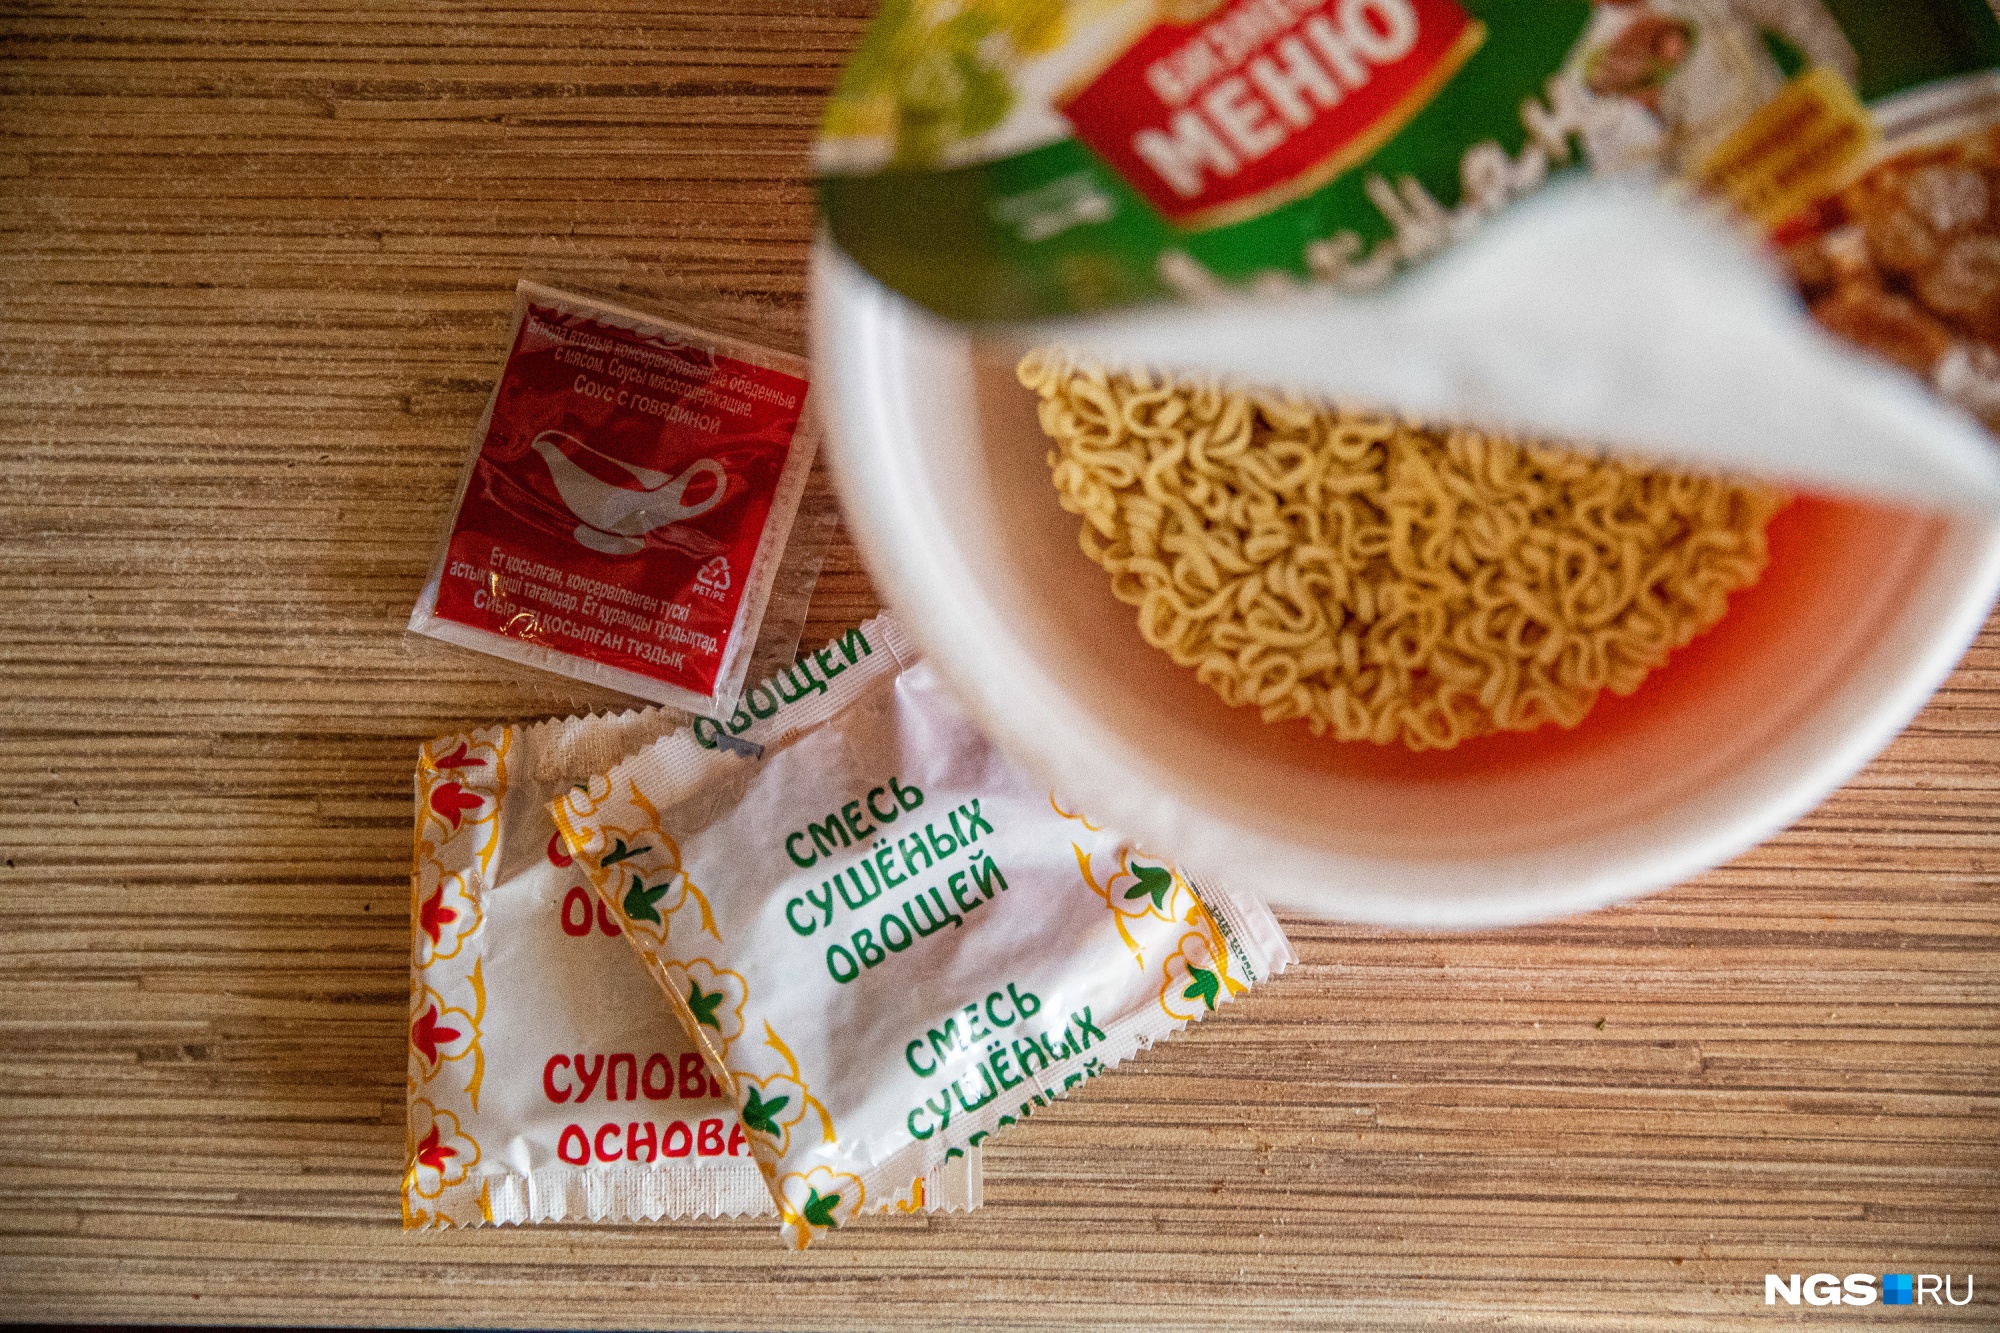 Стандартный набор упаковки — пластина лапши и два-три пакета с суповой основой, соусом и сушеными добавками